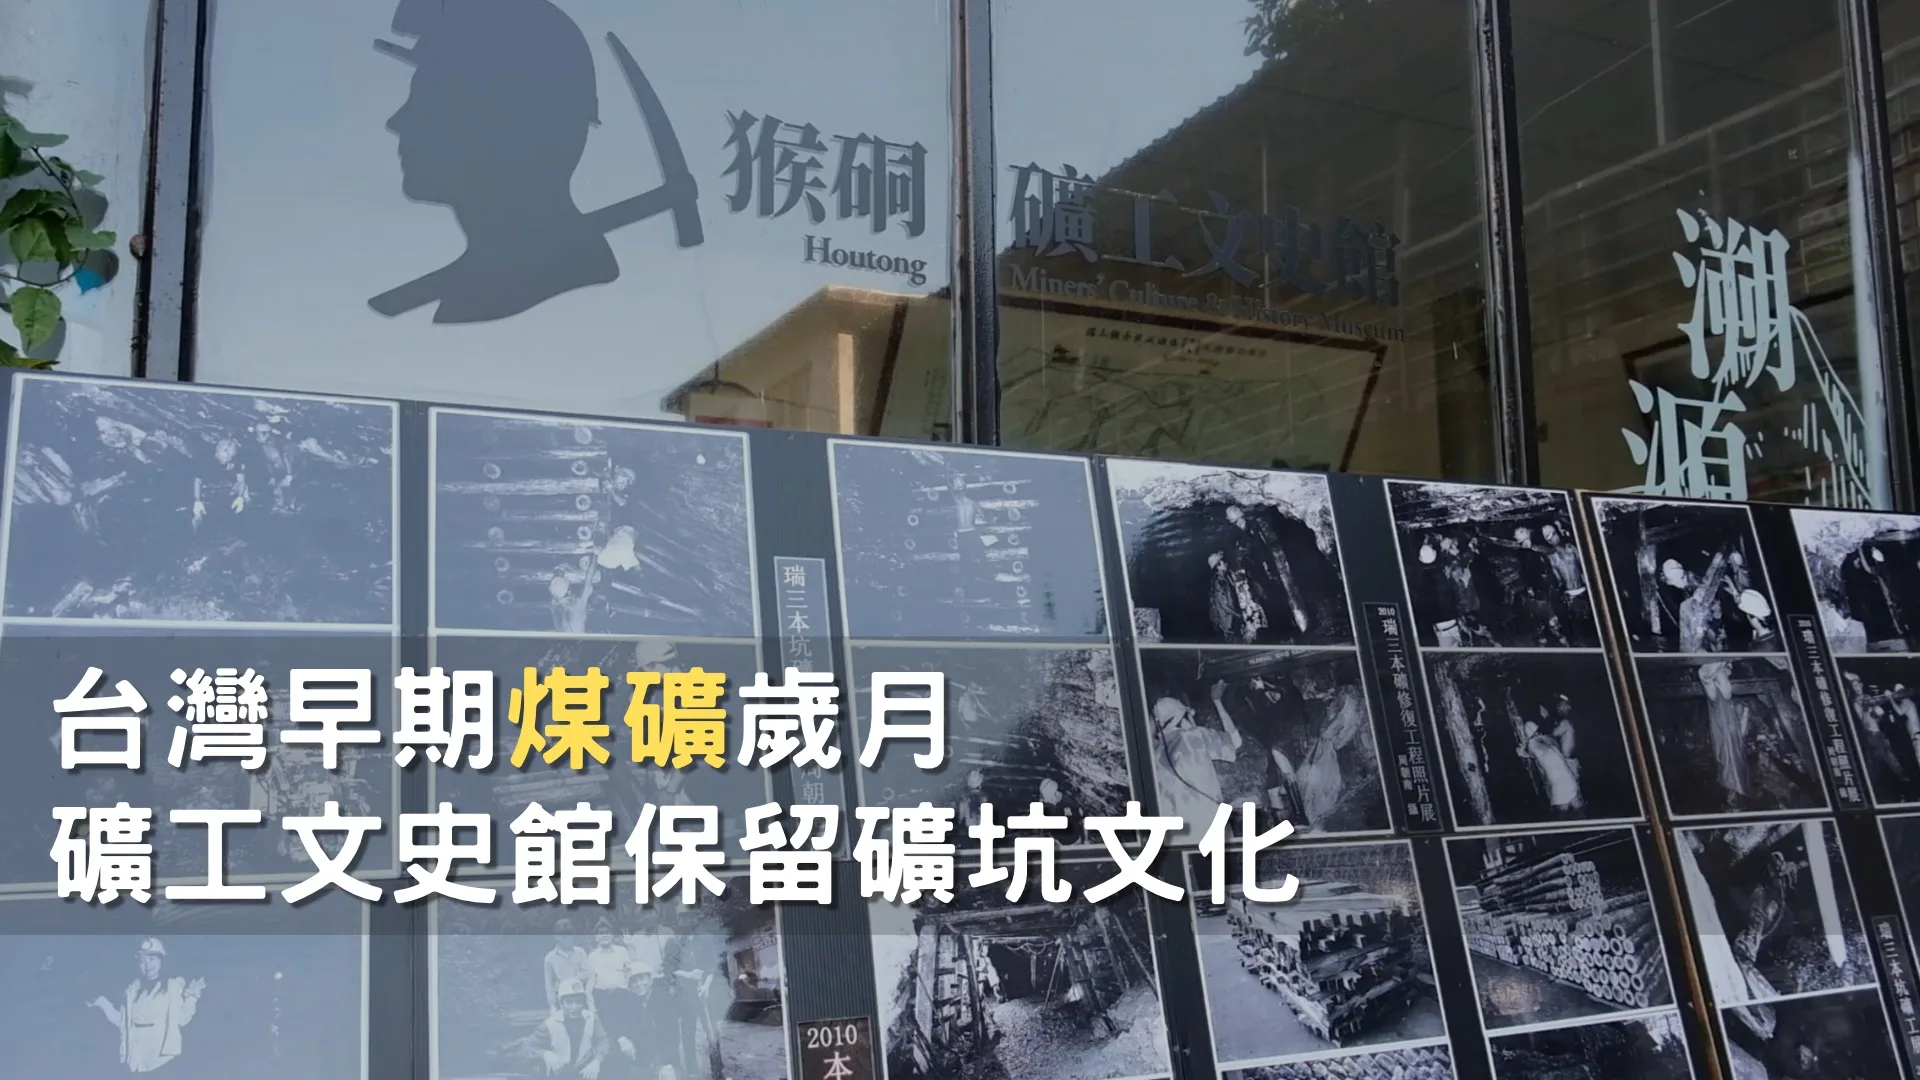 台灣採礦歲月 礦工文史館記錄勞動歷史